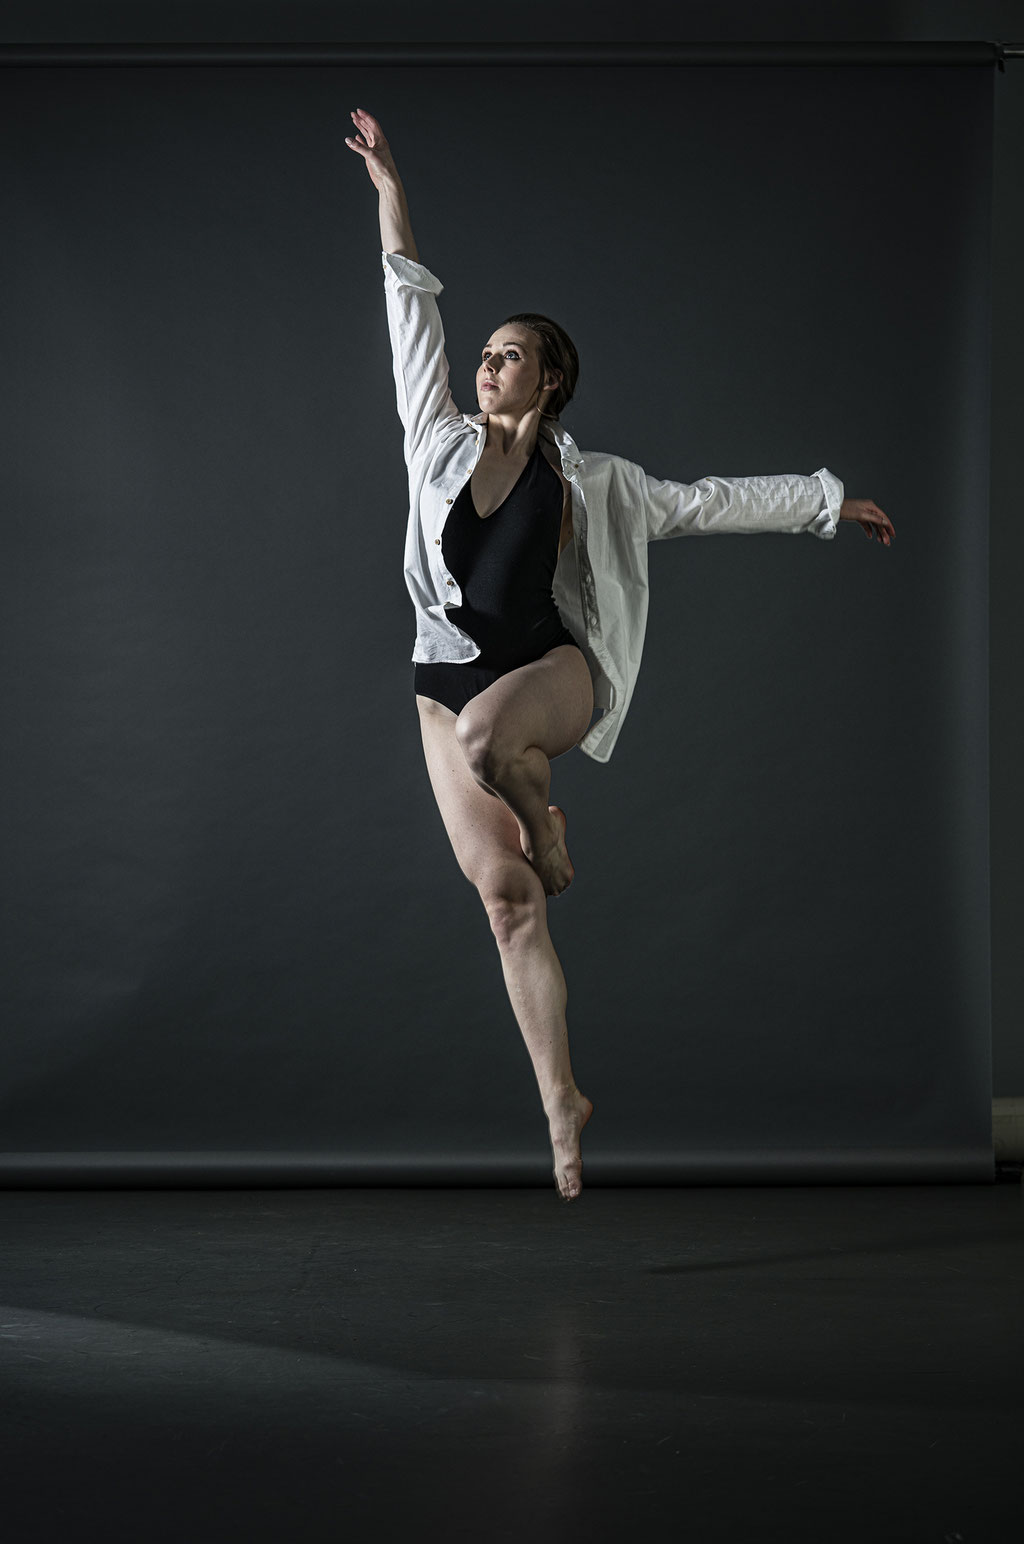 Lara Schitto - Singer, Dancer, Actress  ©martin_schitto @fotomartsch